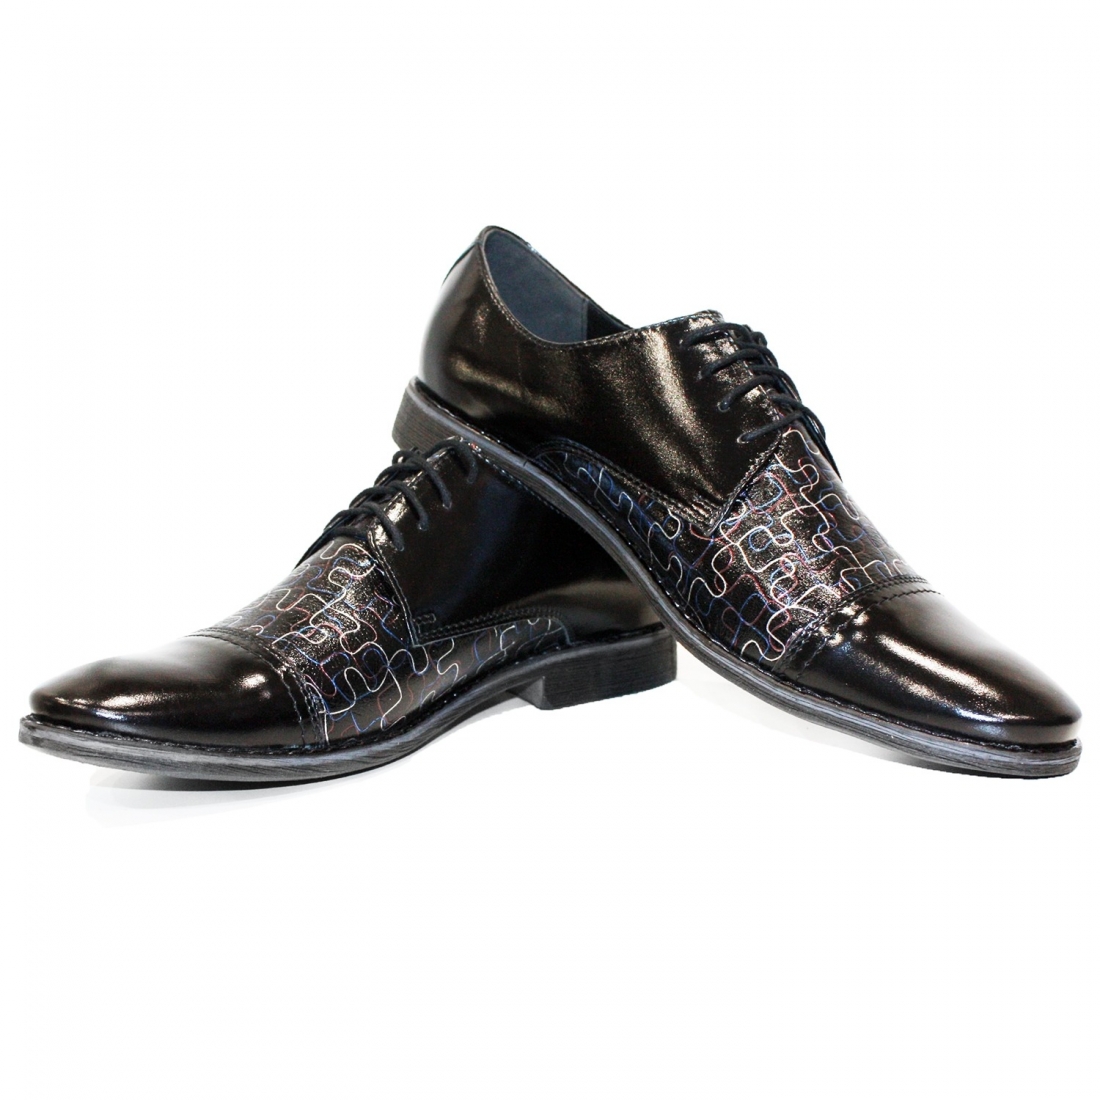 Modello Puzzels - Scarpe Classiche - Handmade Colorful Italian Leather Shoes